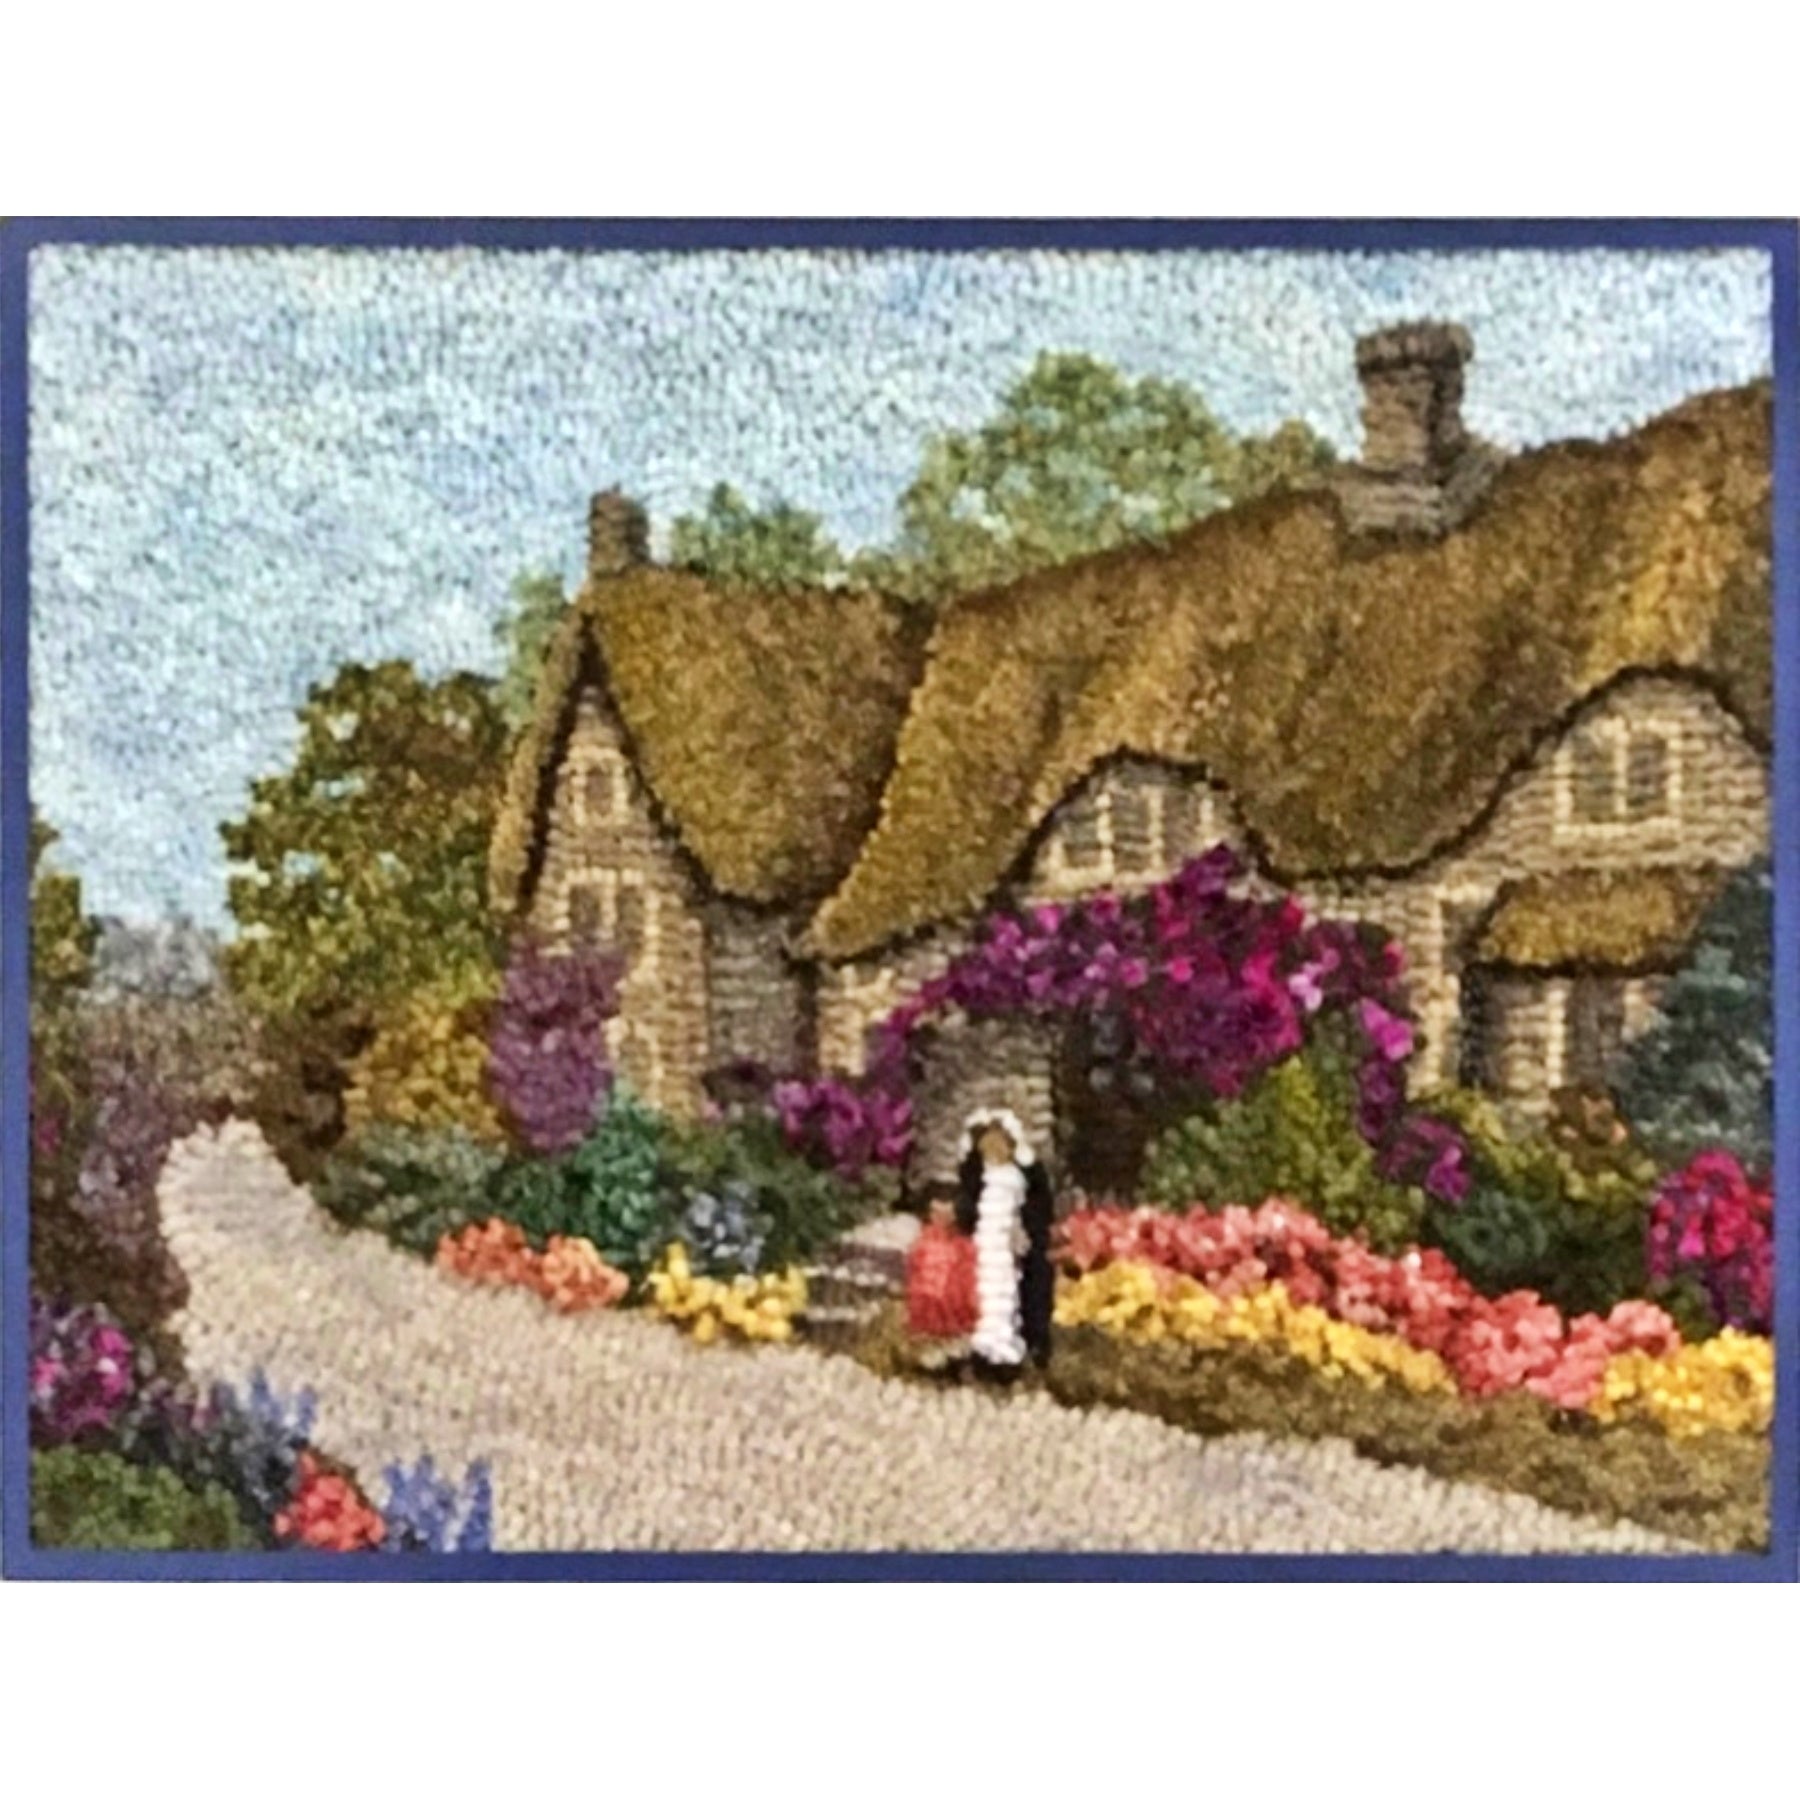 Devonshire Cottage, rug hooked by Joyce DiGregorio